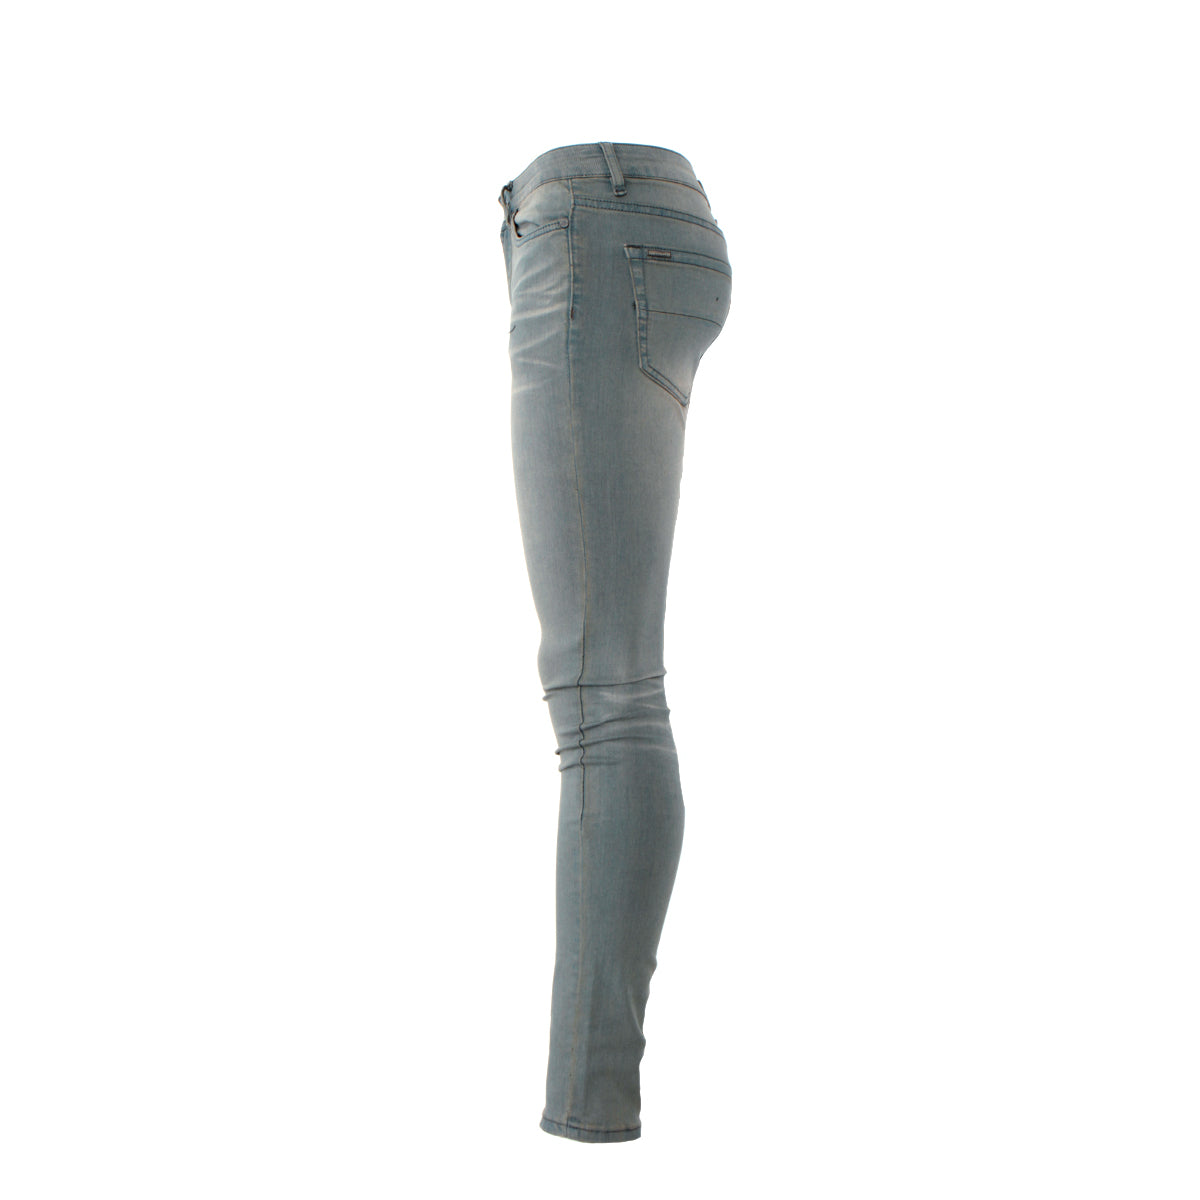 SERENEDE Seafoam Men's Skinny Designer Jeans Slate Blue